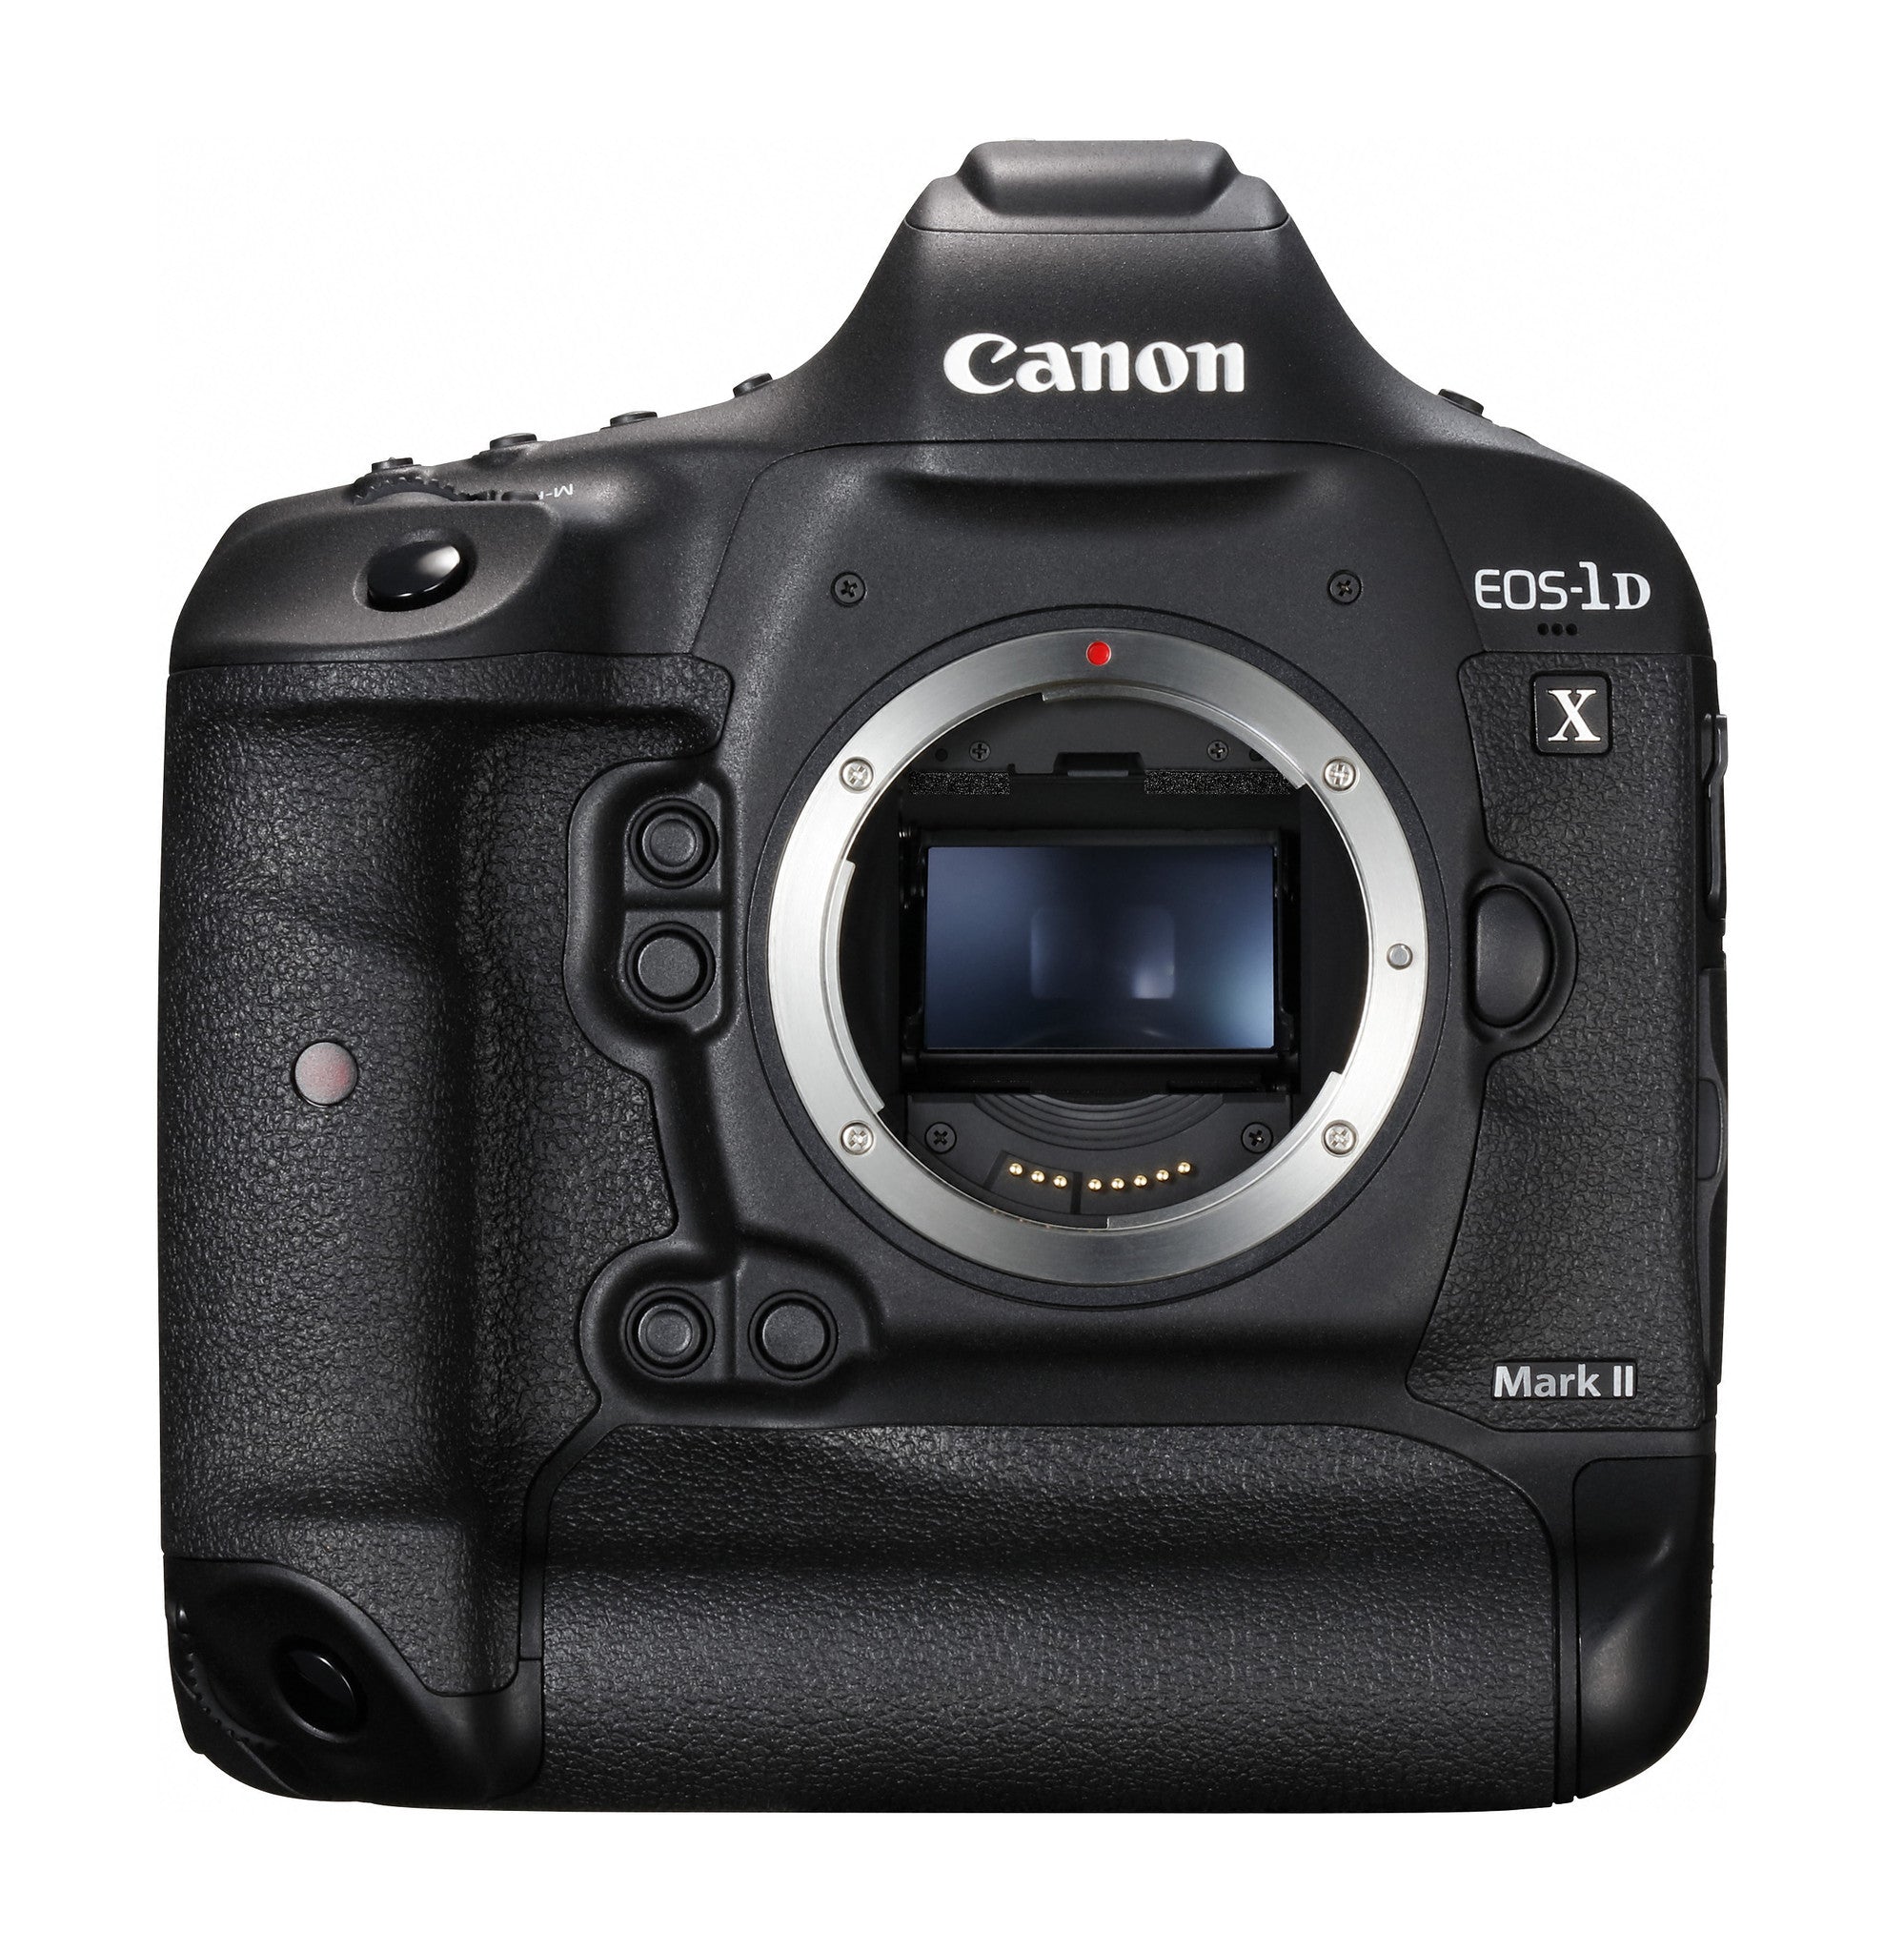 Canon EOS 1D X Mark II Digital Camera Body, camera dslr cameras, Canon - Pictureline  - 1